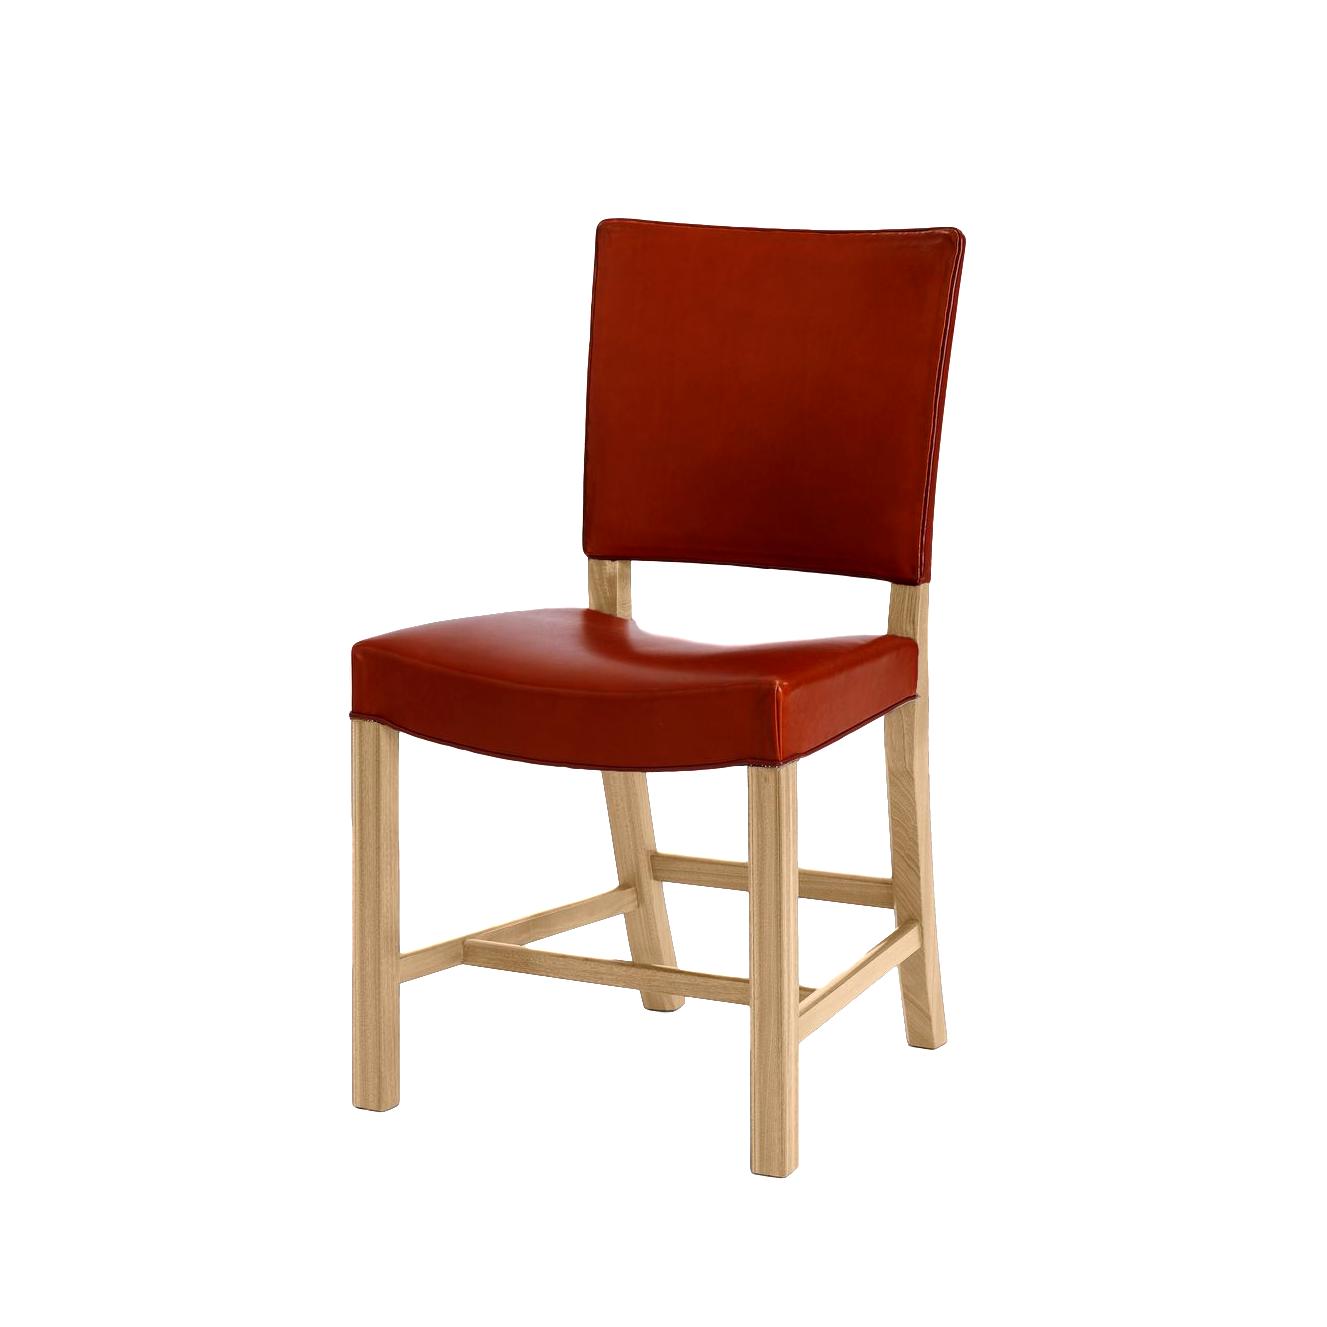 Carl Hansen KK39490 liten rød stol, eik såp/svart skinn